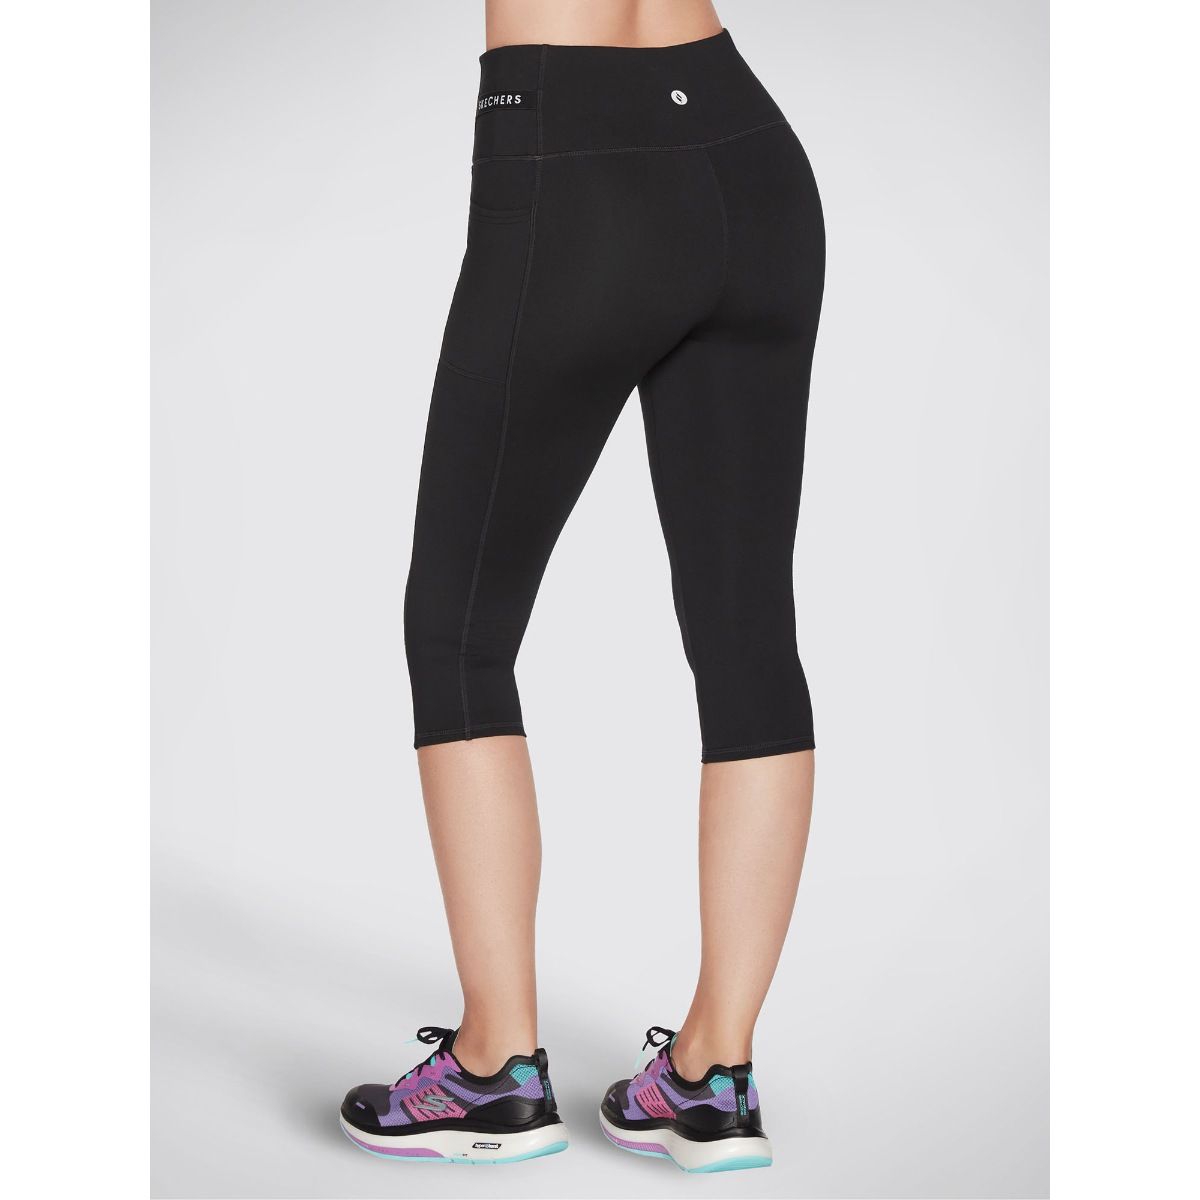 Nike Pro Dri Fit BE STRONG Womens Size XS Leggings Capri Pants Black  Running  eBay